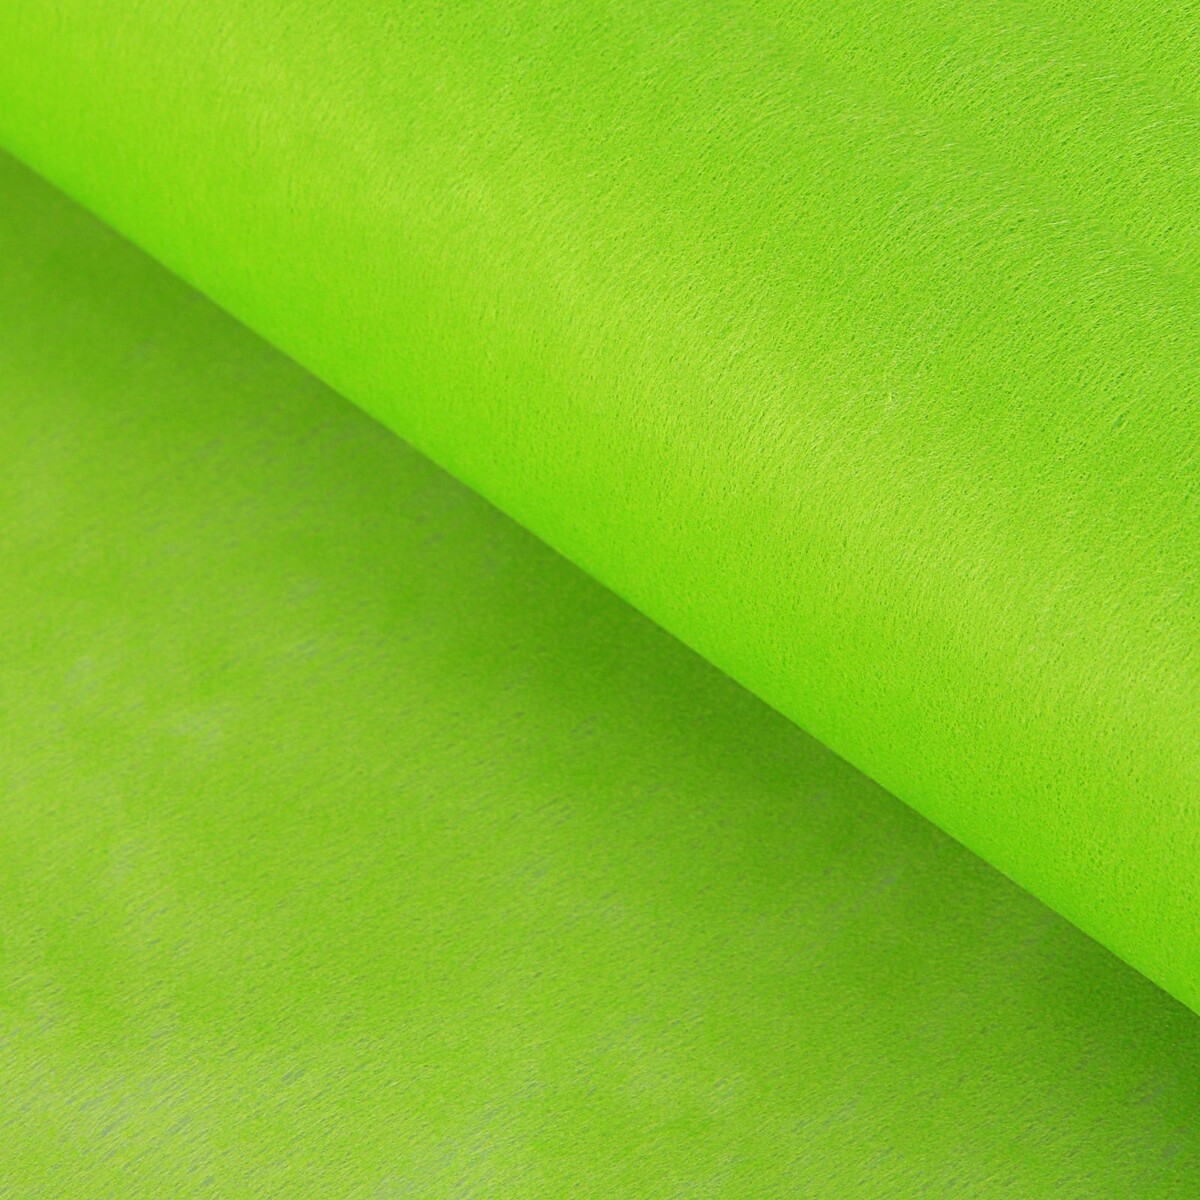 Фетр для упаковок и поделок, однотонный, салатовый, зеленый, двусторонний, рулон 1шт., 0,5 x 20 м фетр для декора и флористики однотонный бургундский красный рулон 1шт 50 см x 15 м